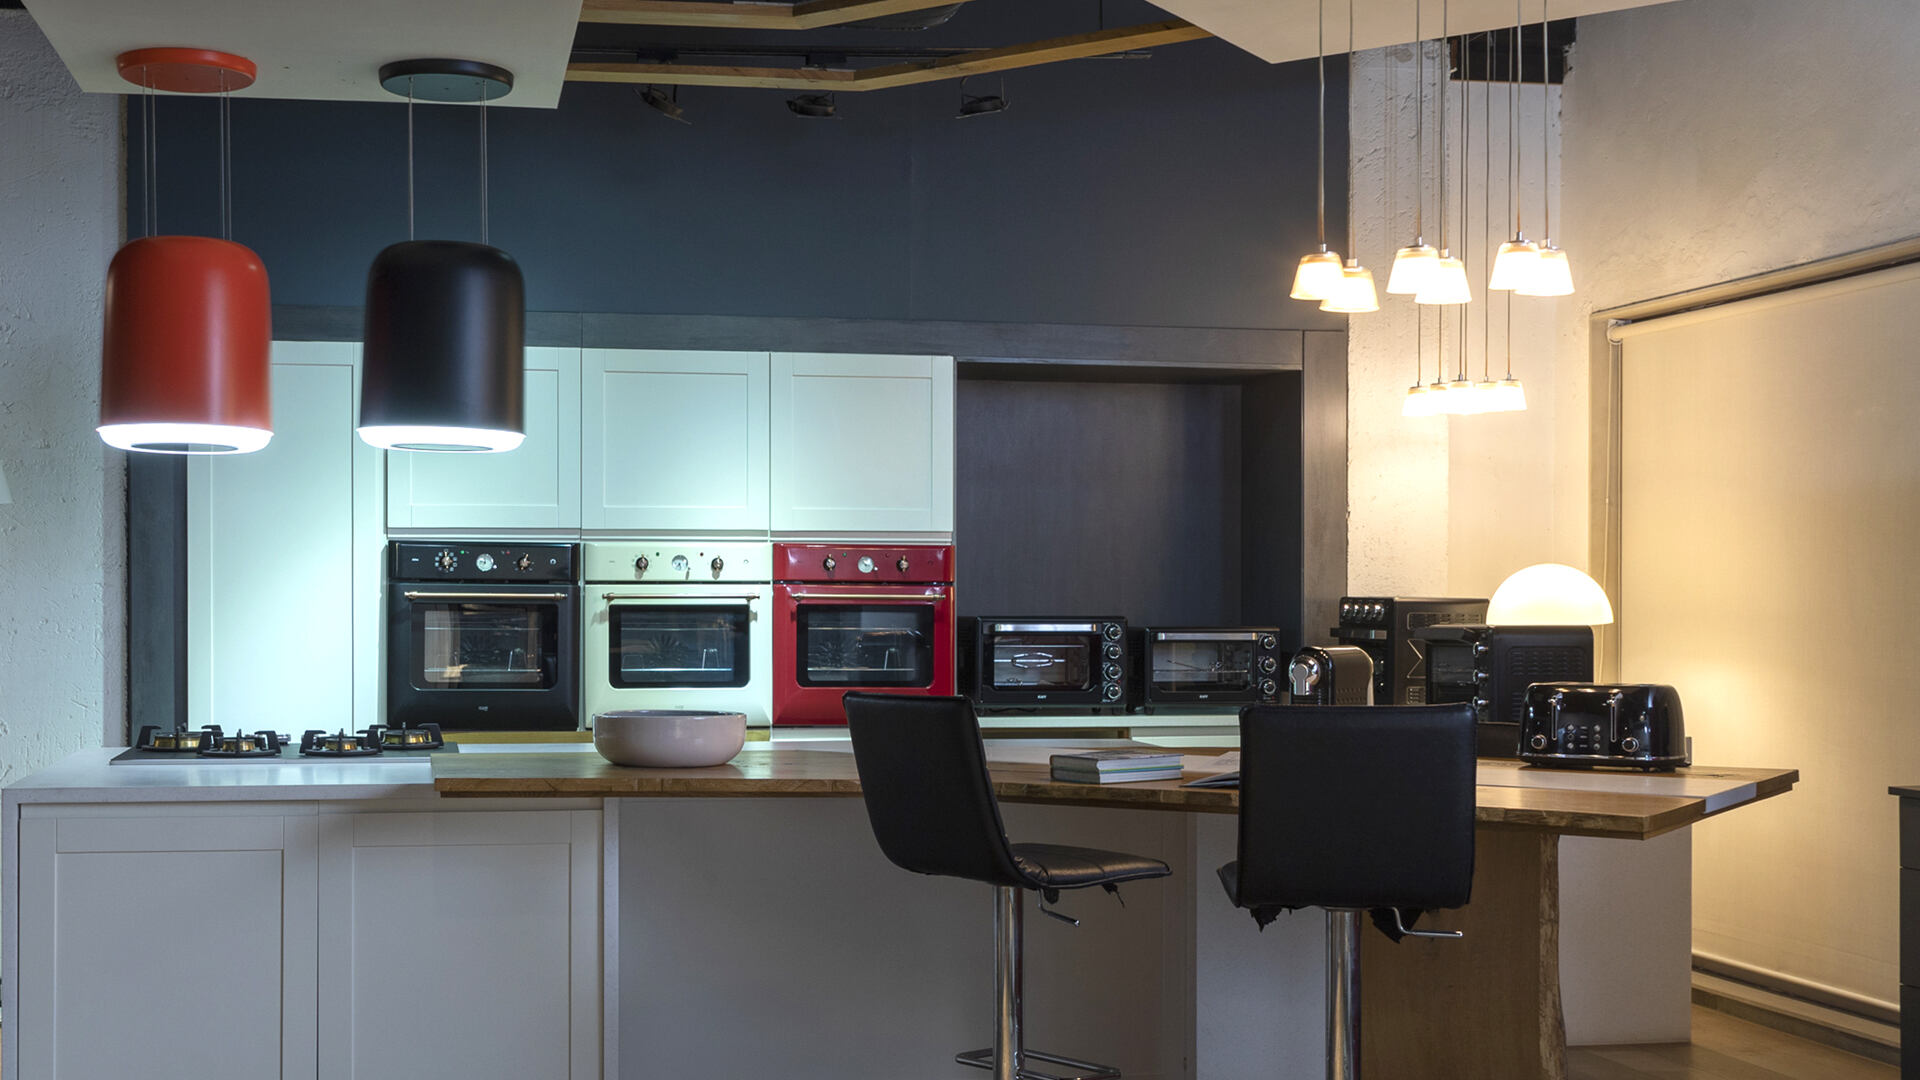 KAFF kitchen appliances setup